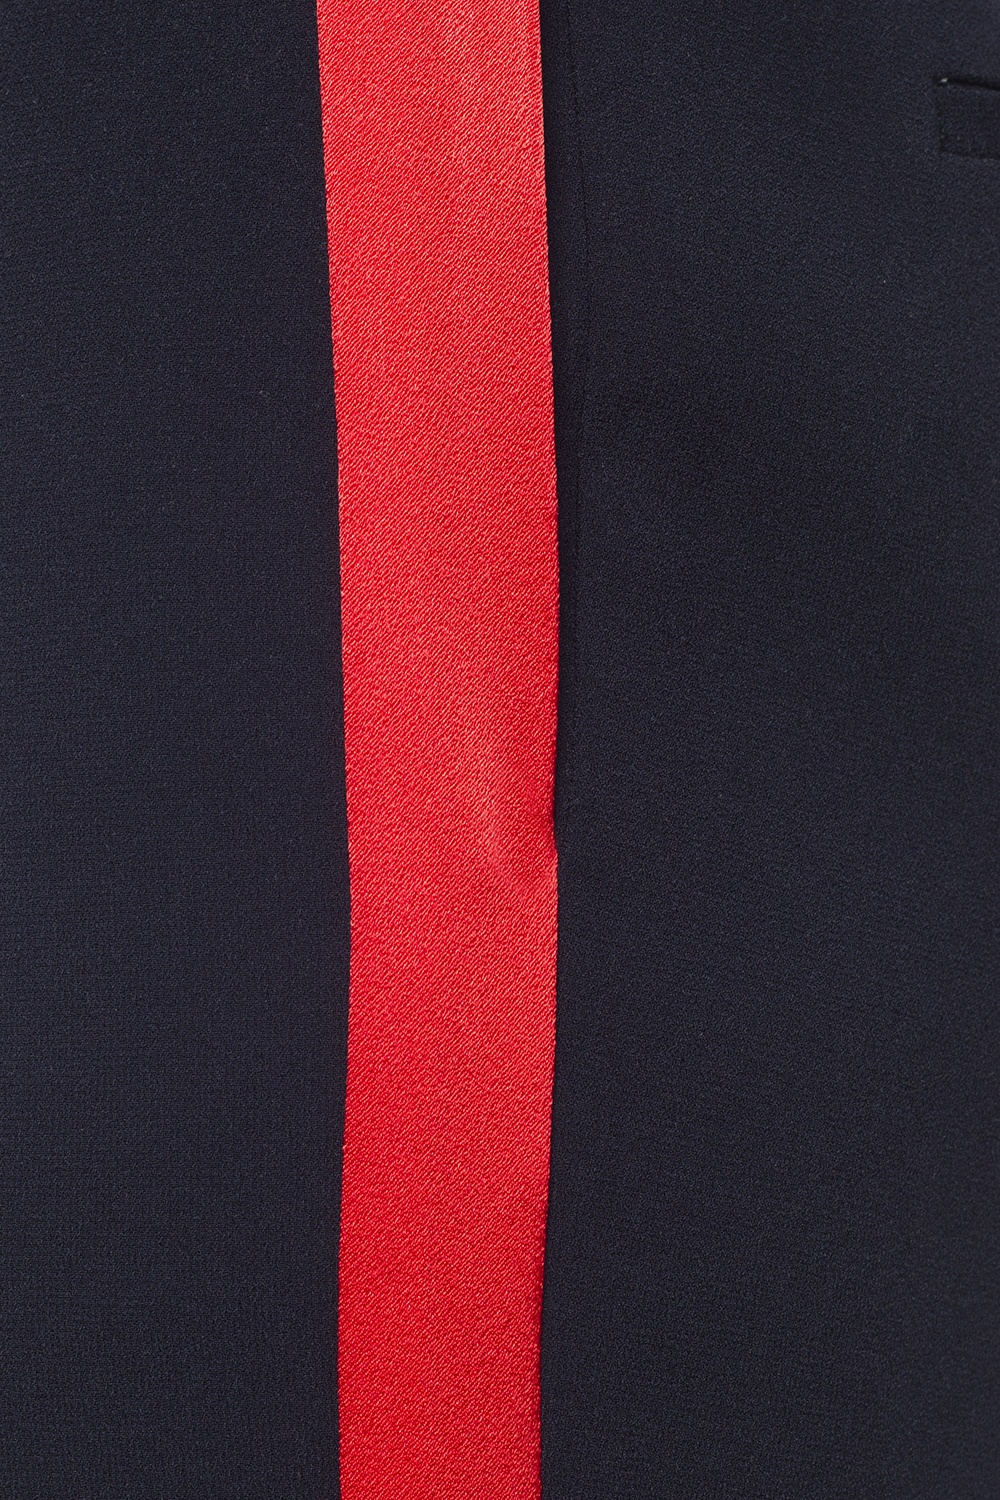 Pants with Side Stripes - Dark blue/red - Ladies